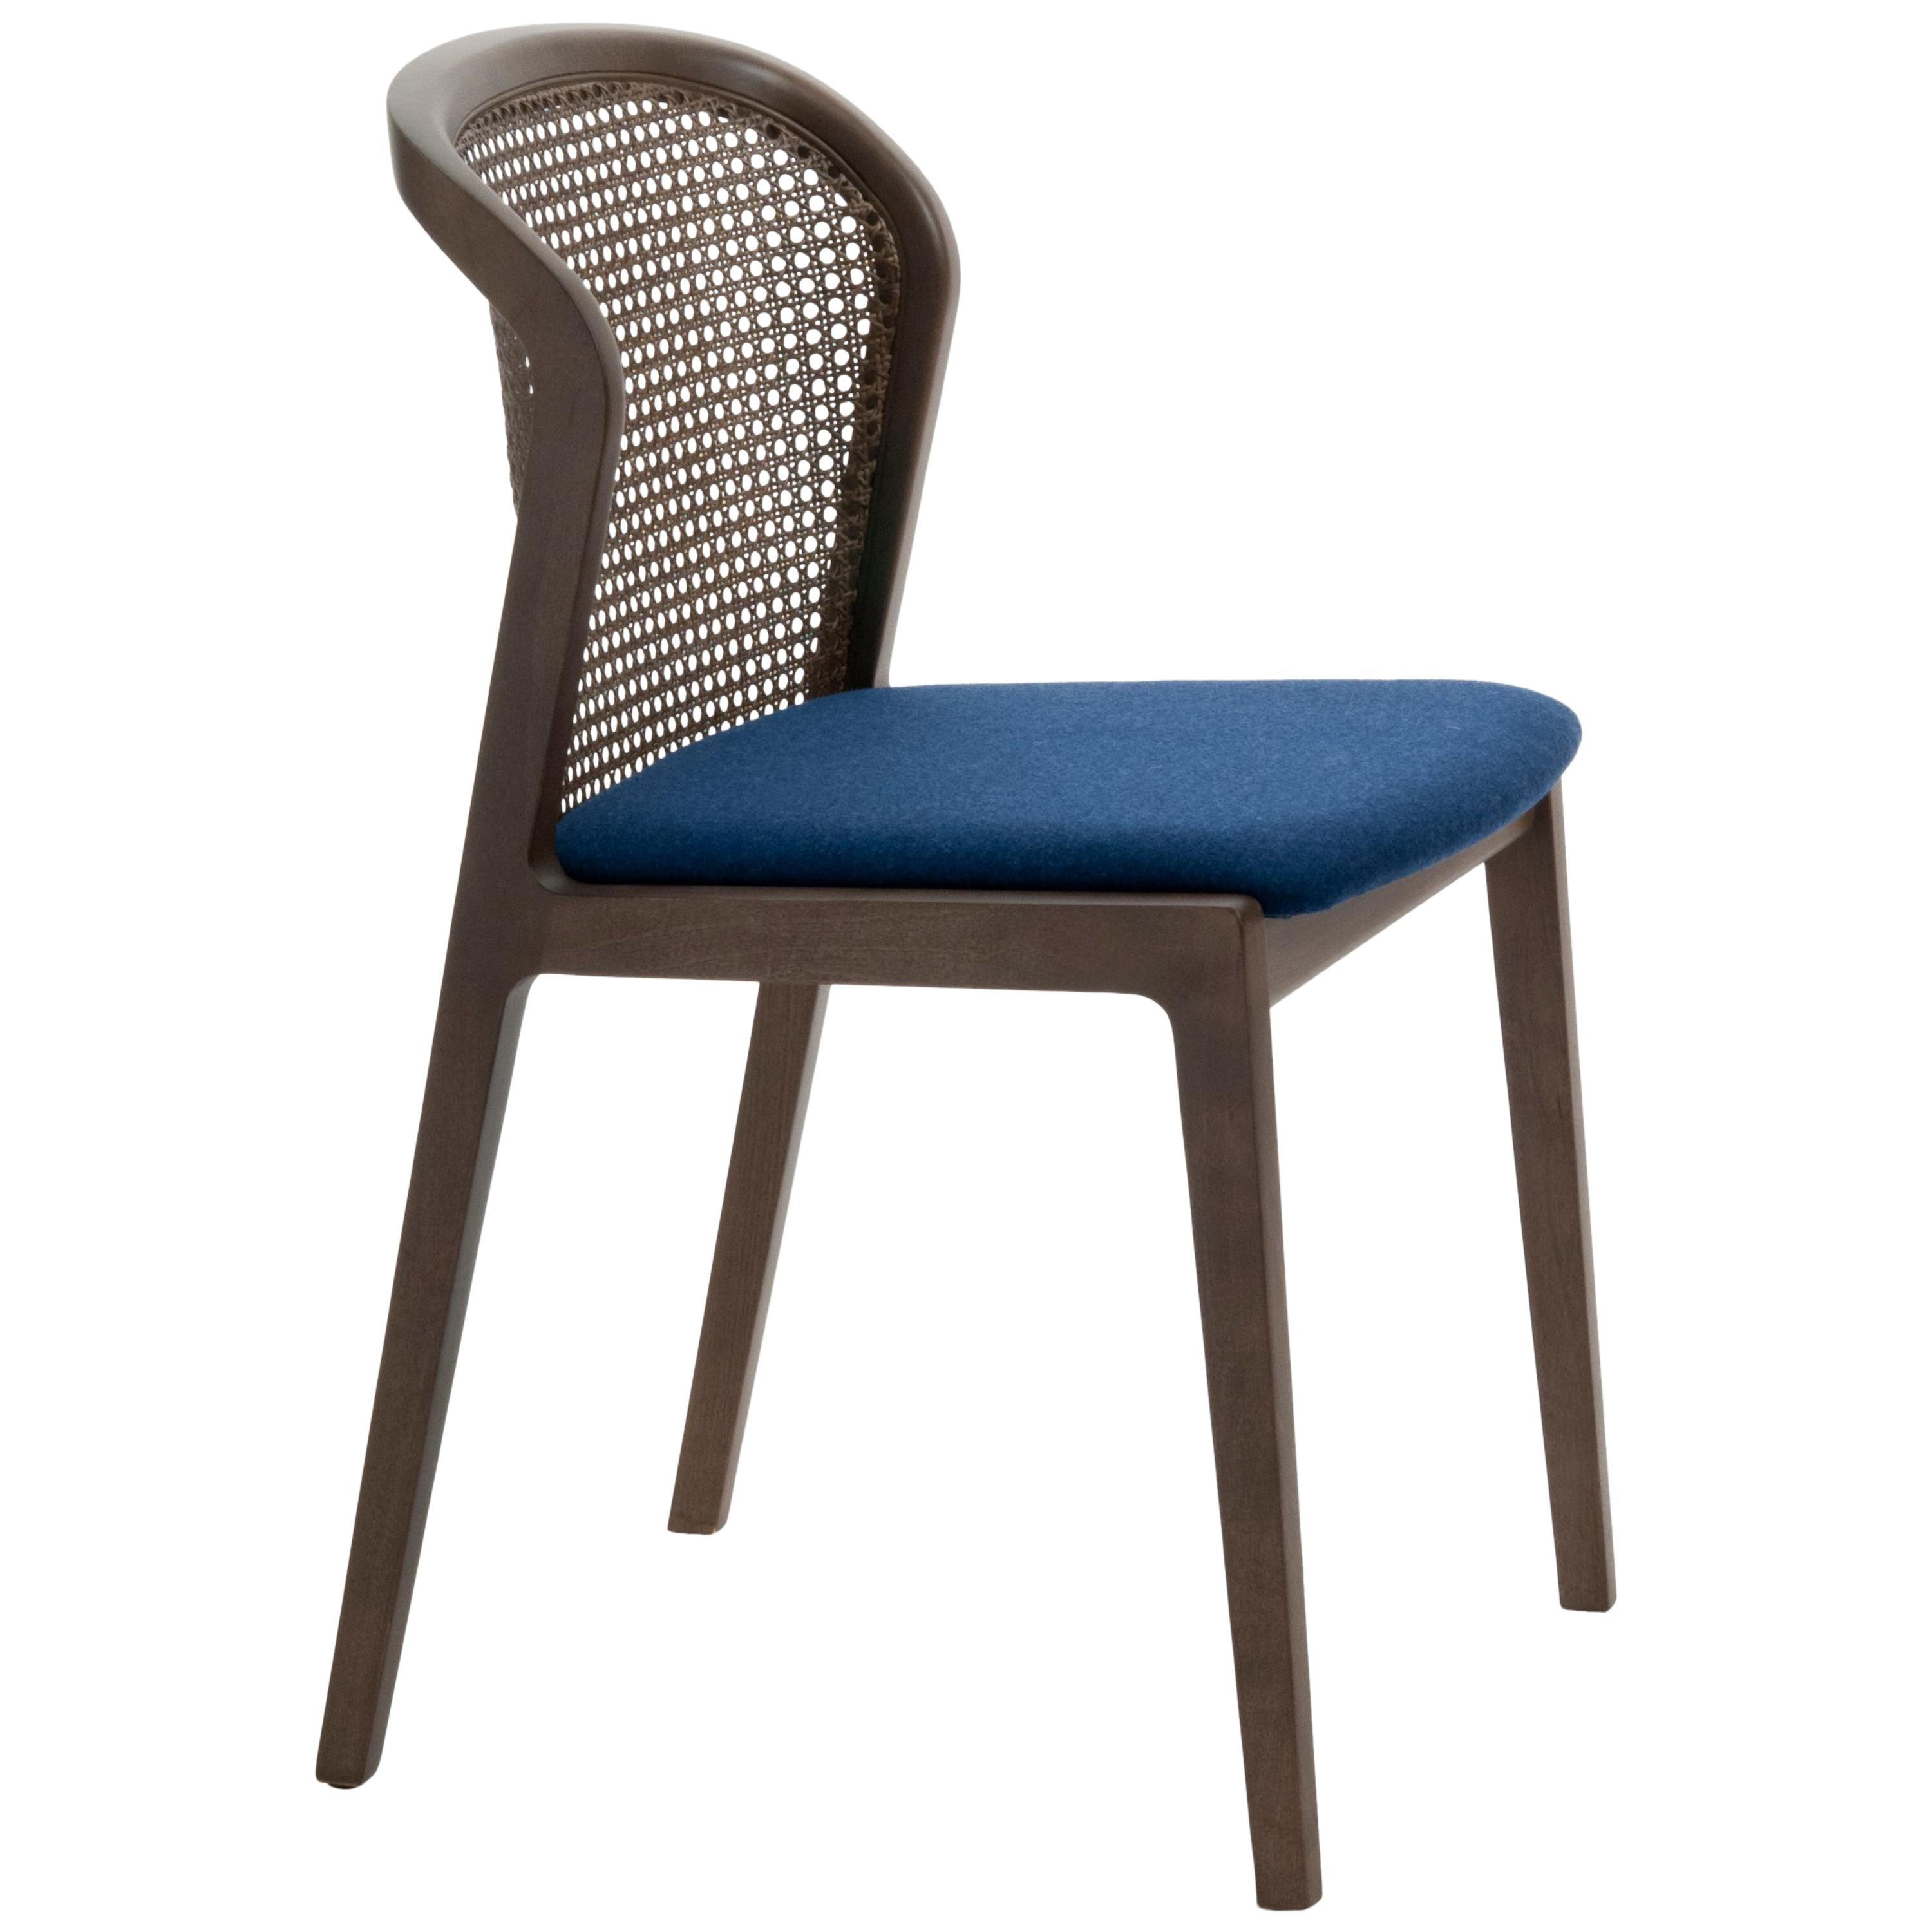 Vienna est une chaise extraordinairement confortable et élégante conçue par Emmanuel Gallina qui aime citer Brancusi en disant que 